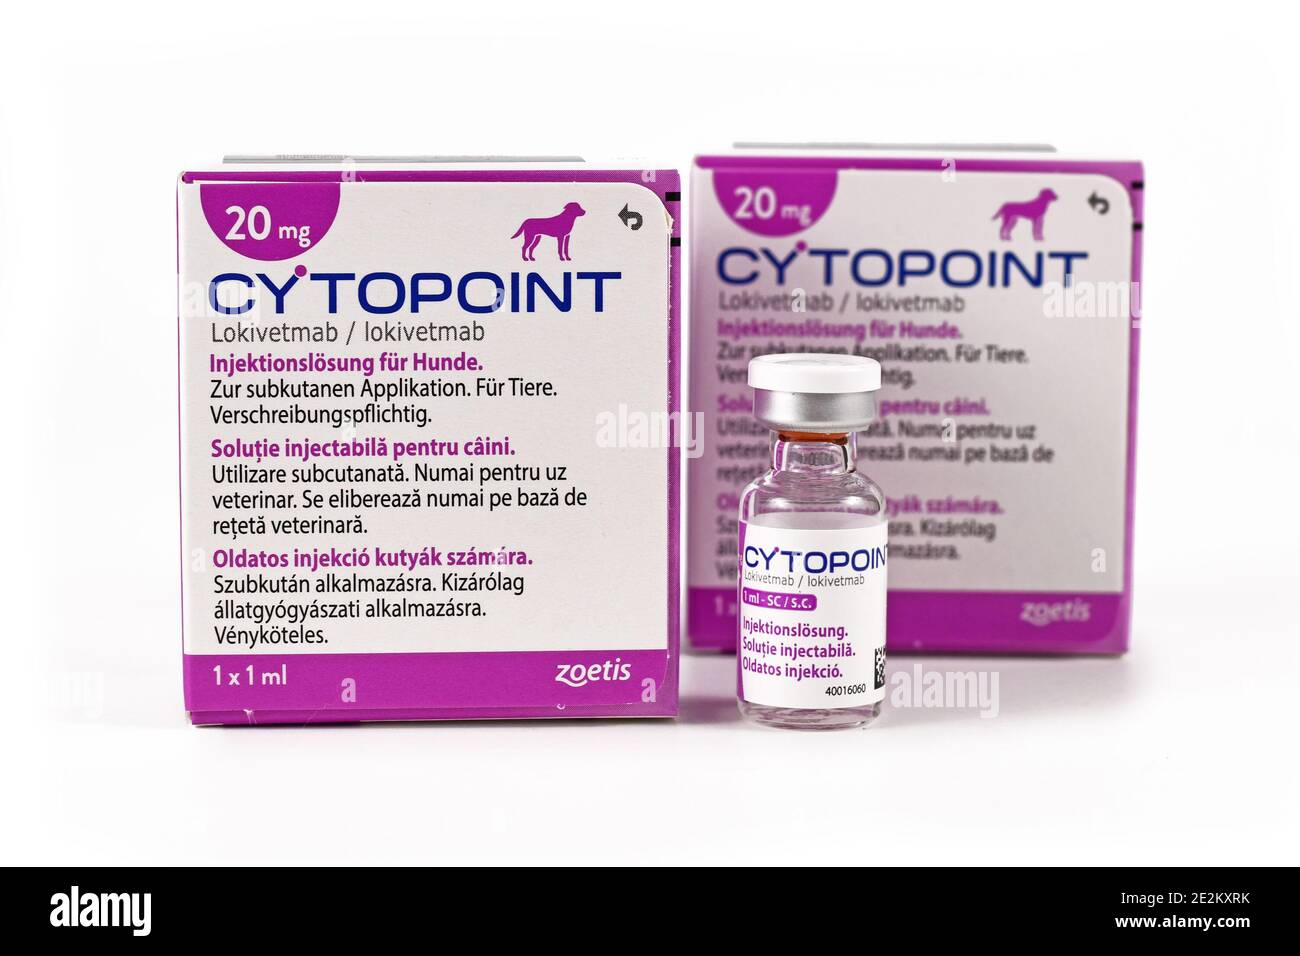 Des sacs et un flacon de médecine animale appelé 'Cytopoint' contenant un monoclonal anticorps lokivetmab pour le traitement des chiens souffrant d'allergies et de démangeaisons cutanées Banque D'Images